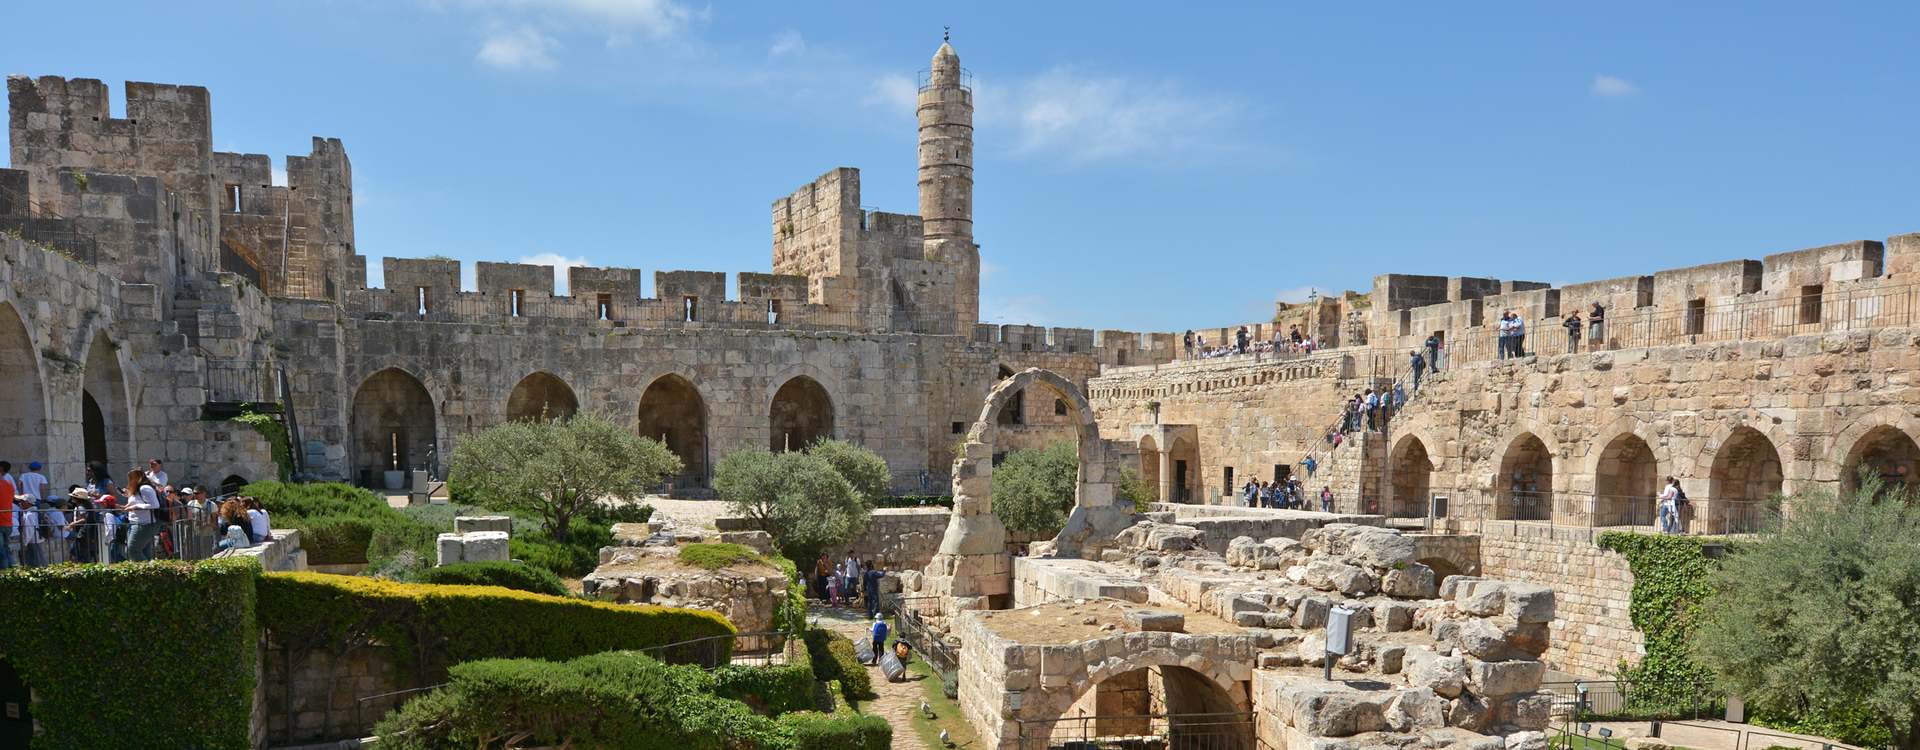 צילום של מוזיאון מגדל דוד